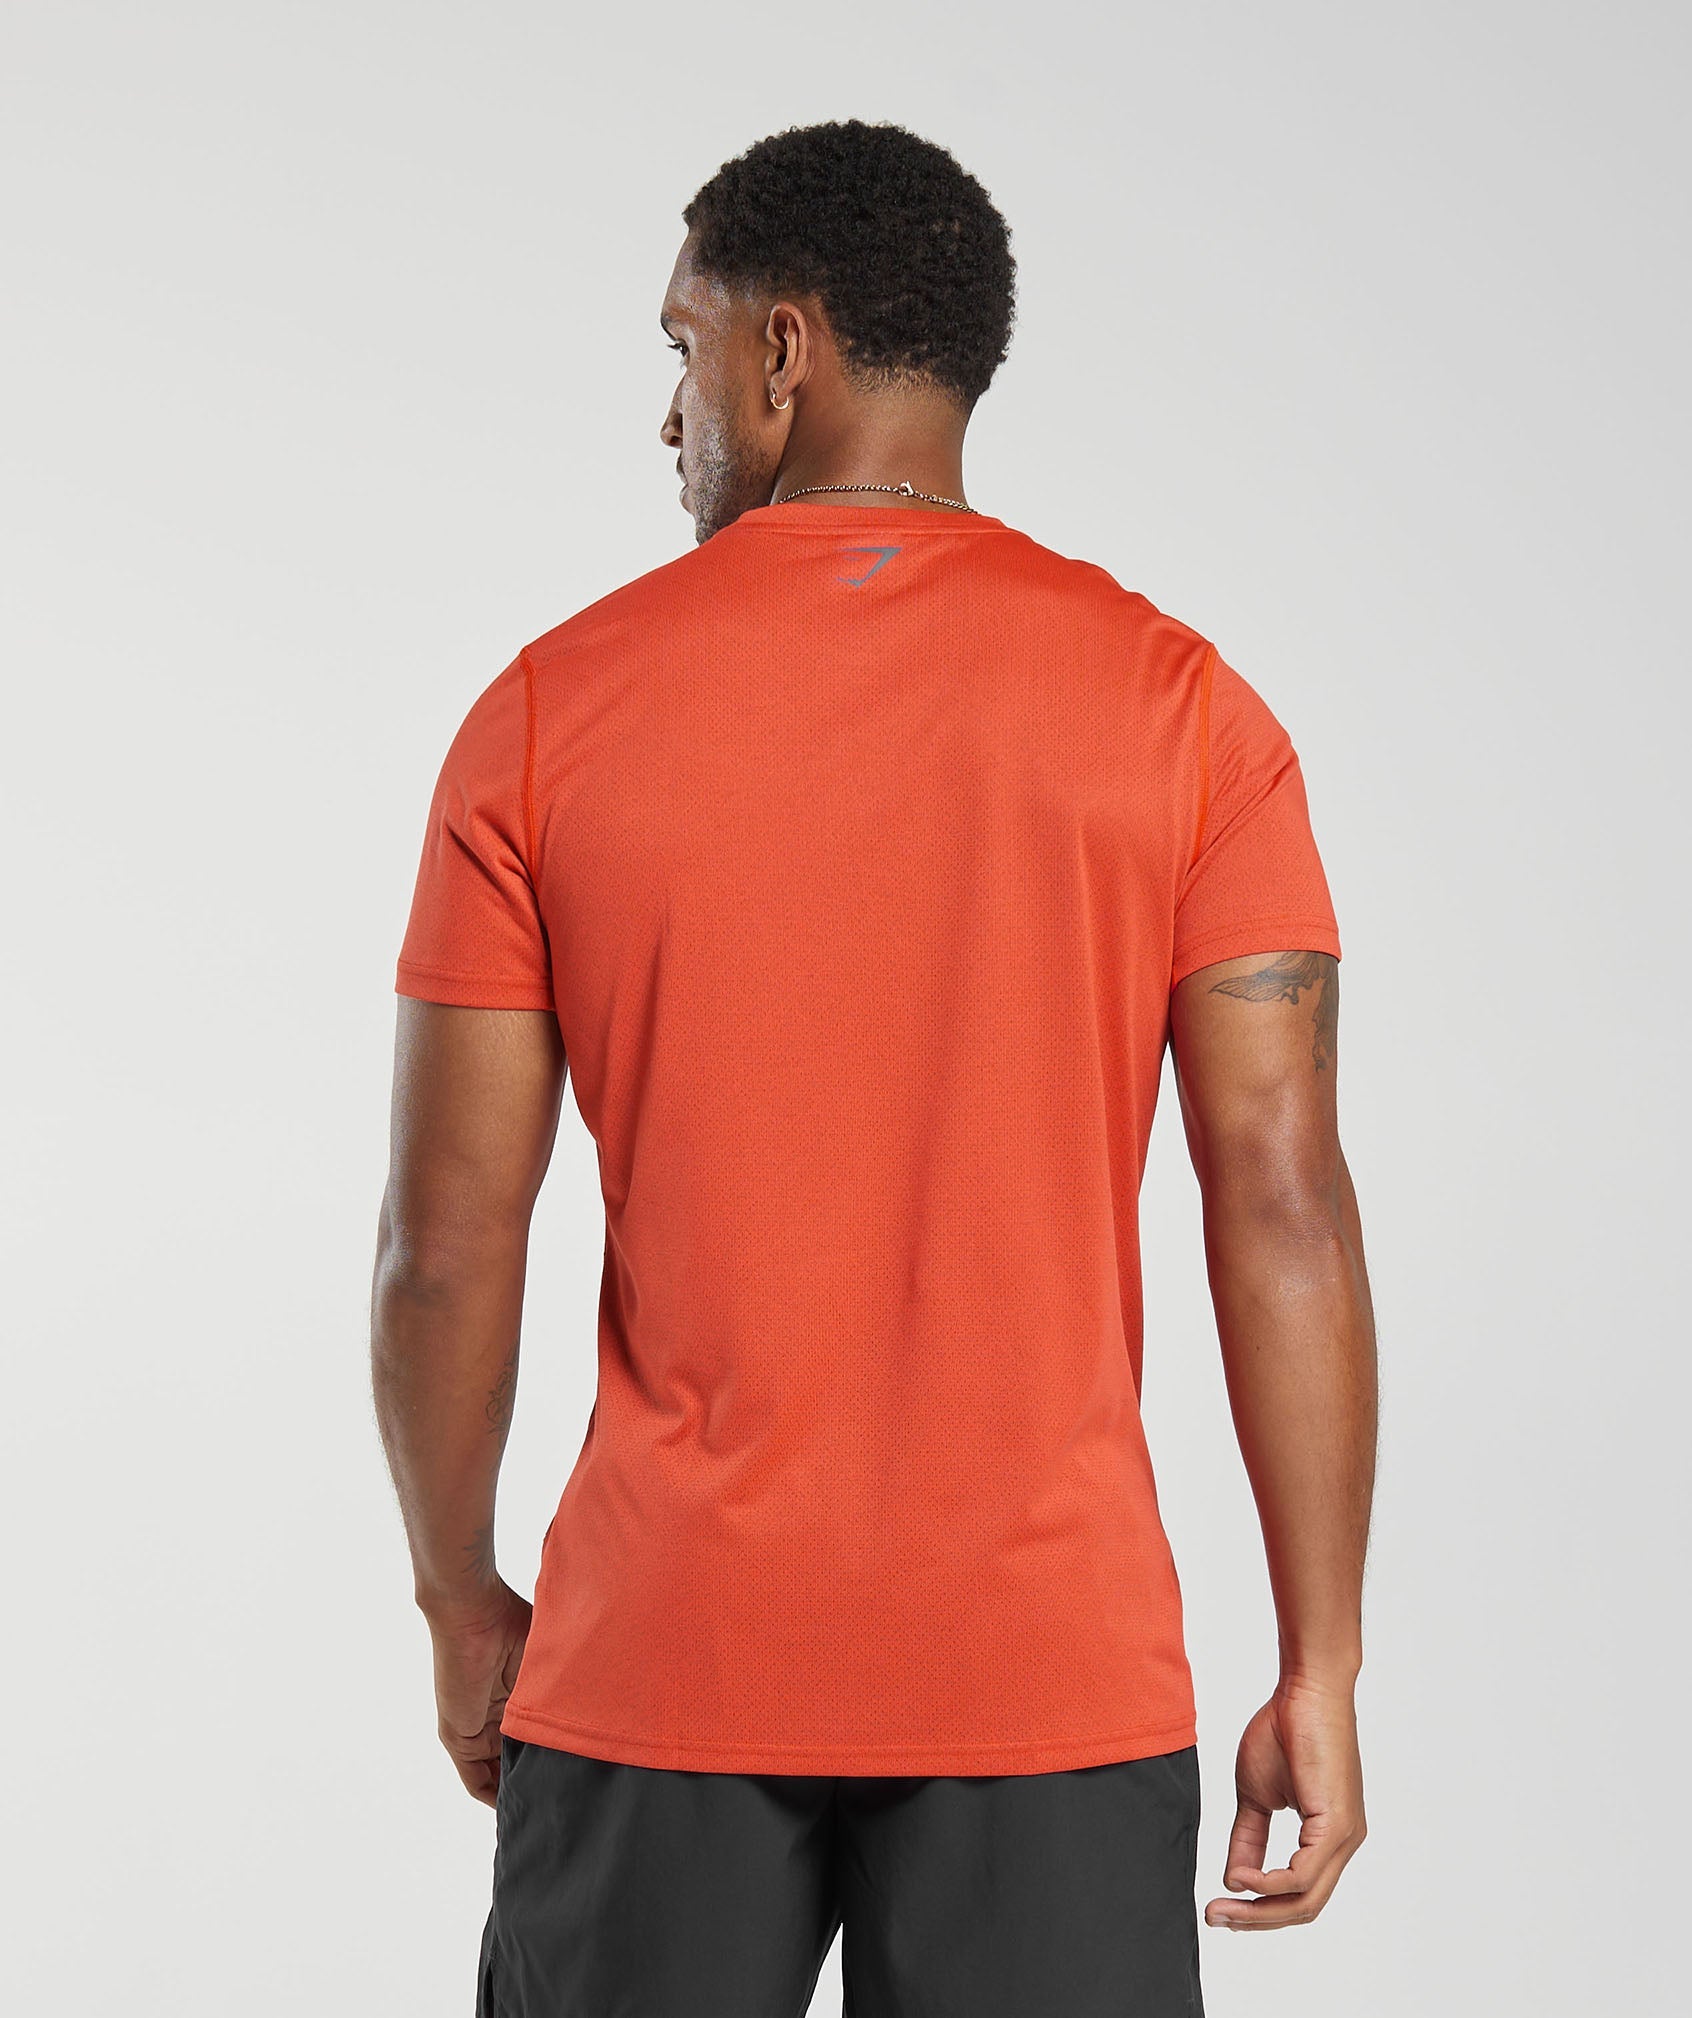 Gymshark Washed Seamless T-Shirt - Orange